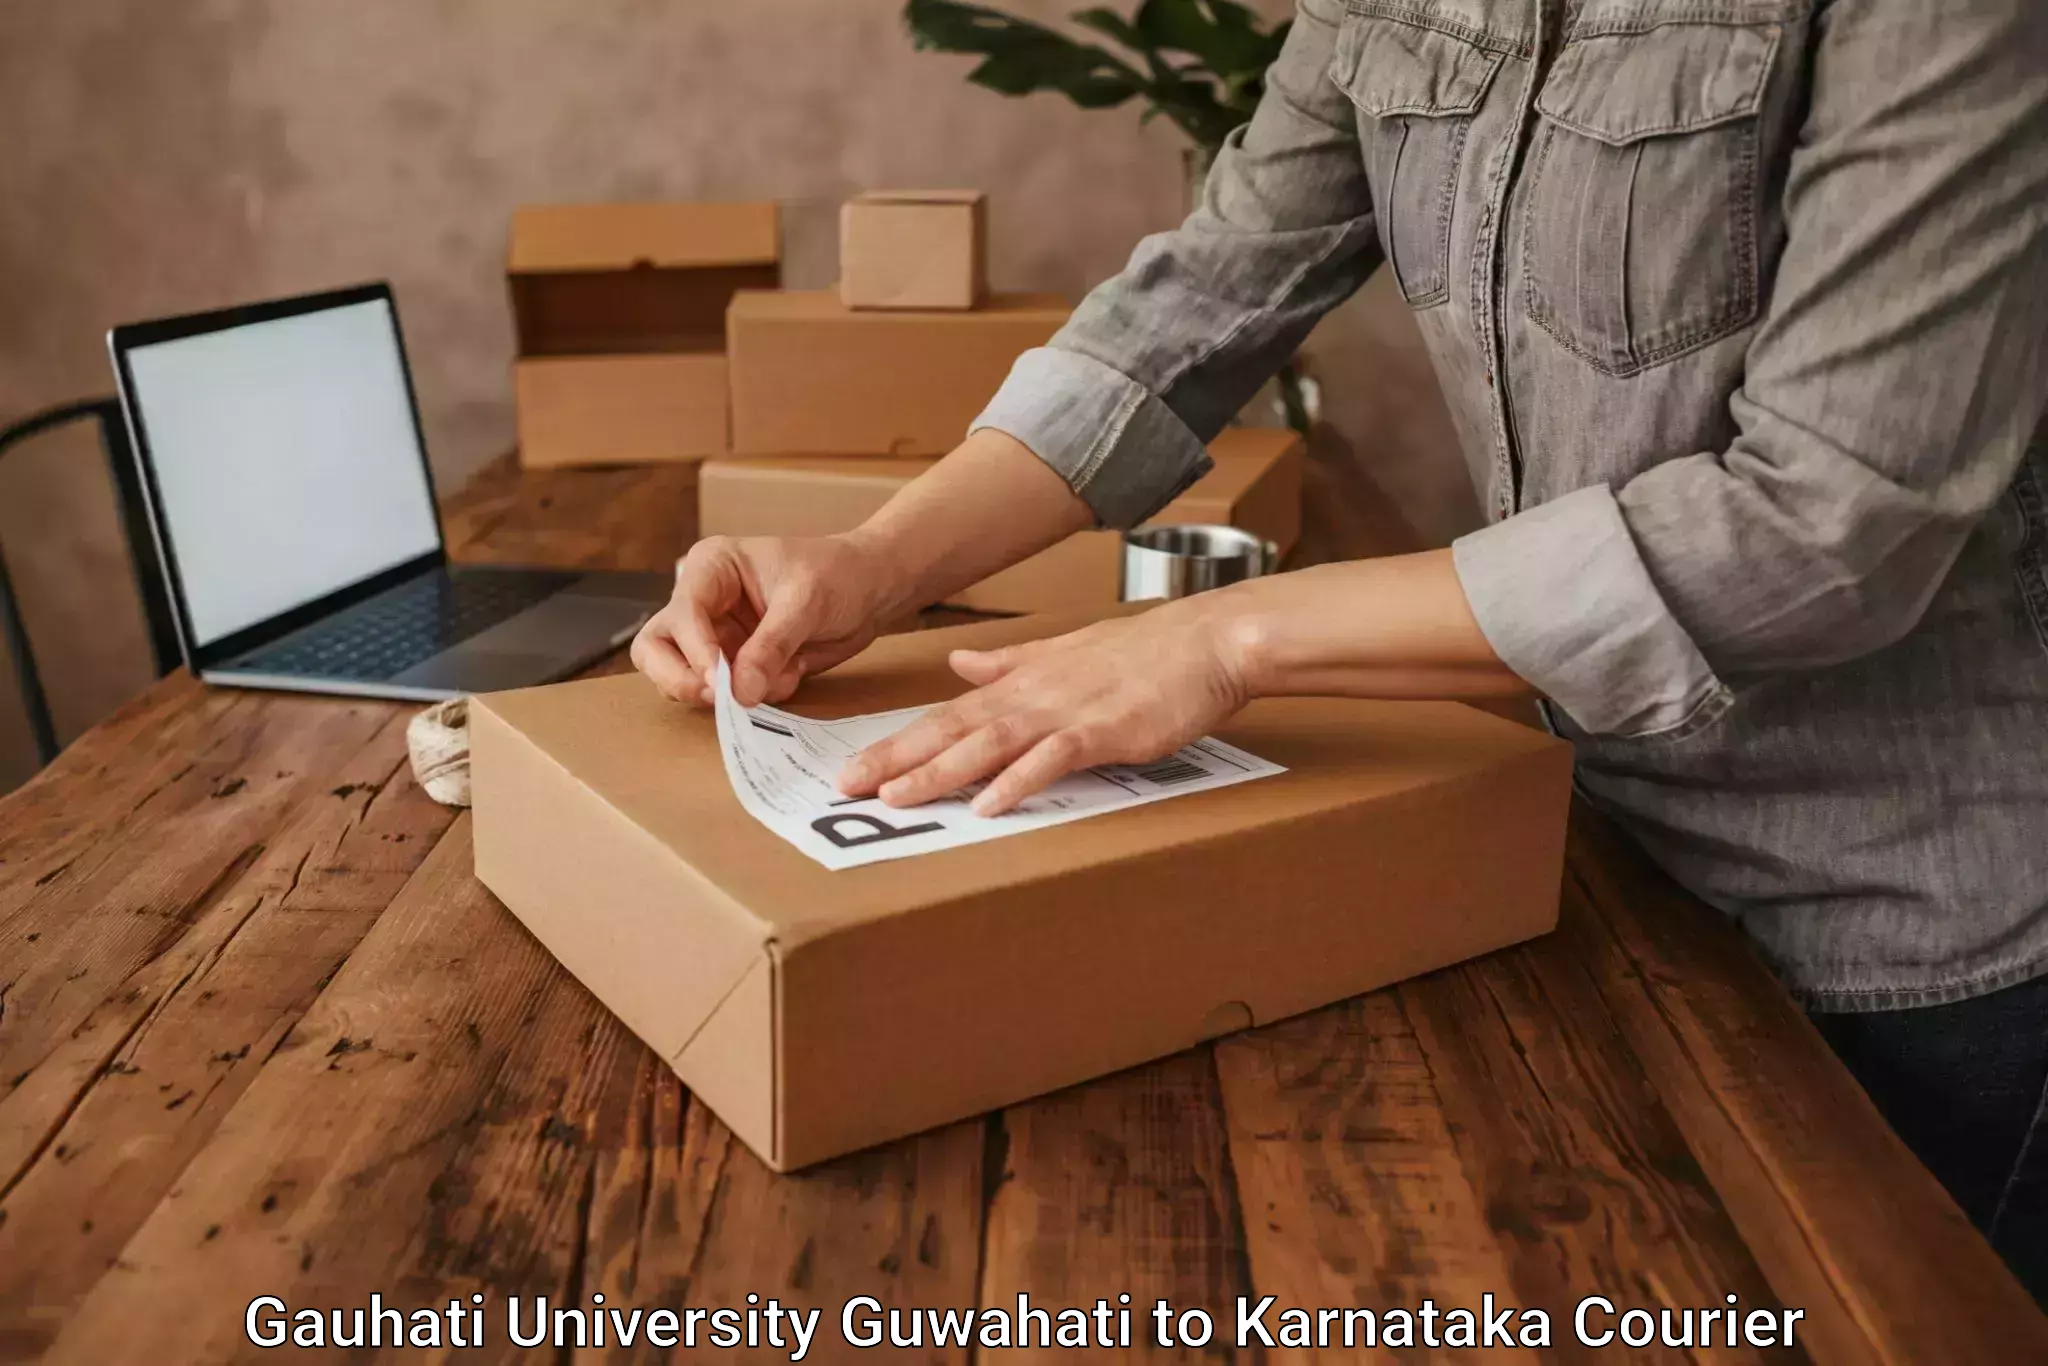 Next day courier Gauhati University Guwahati to Karnataka